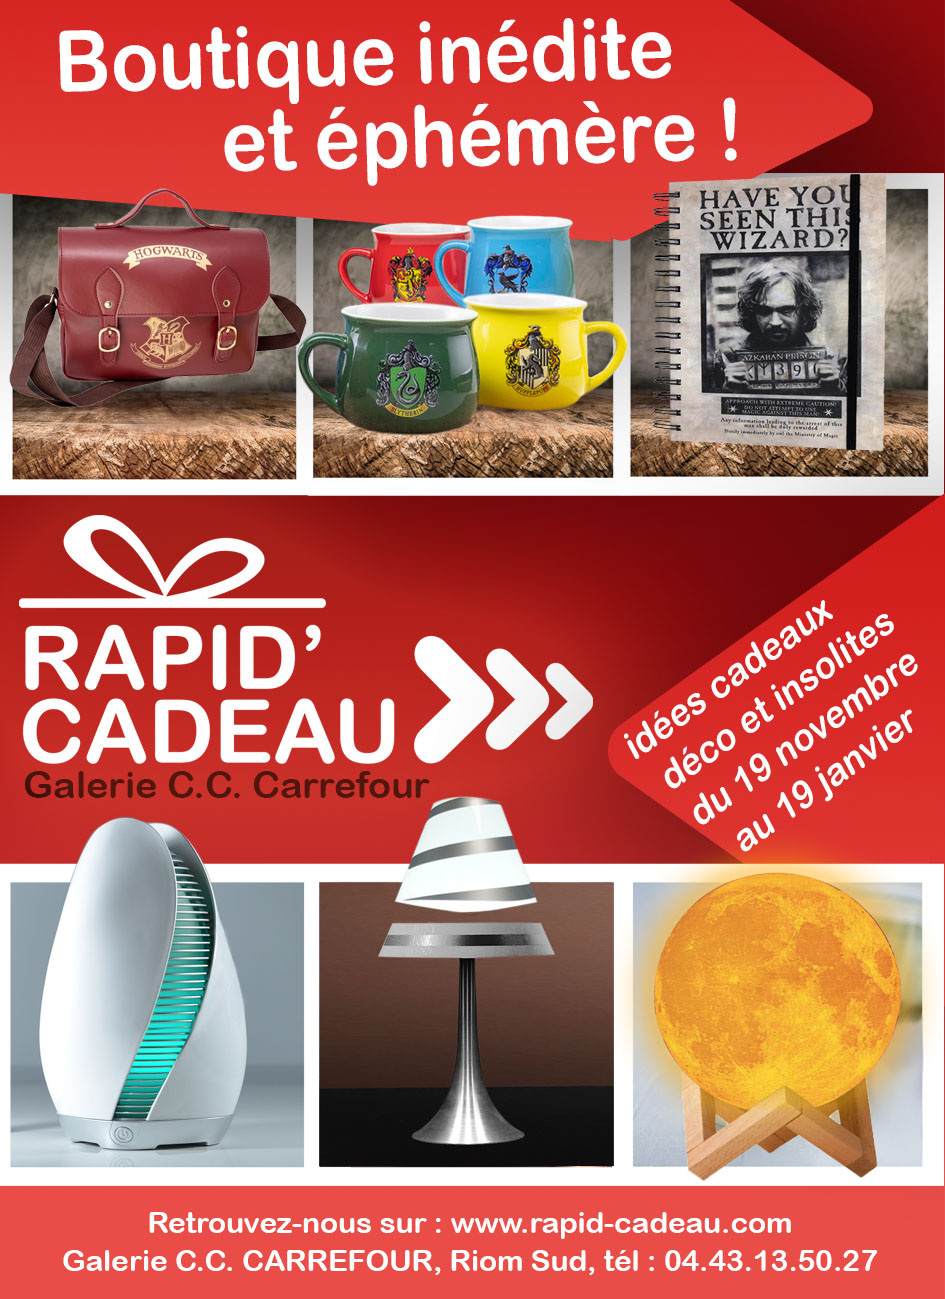 Shop Rapid'Cadeau